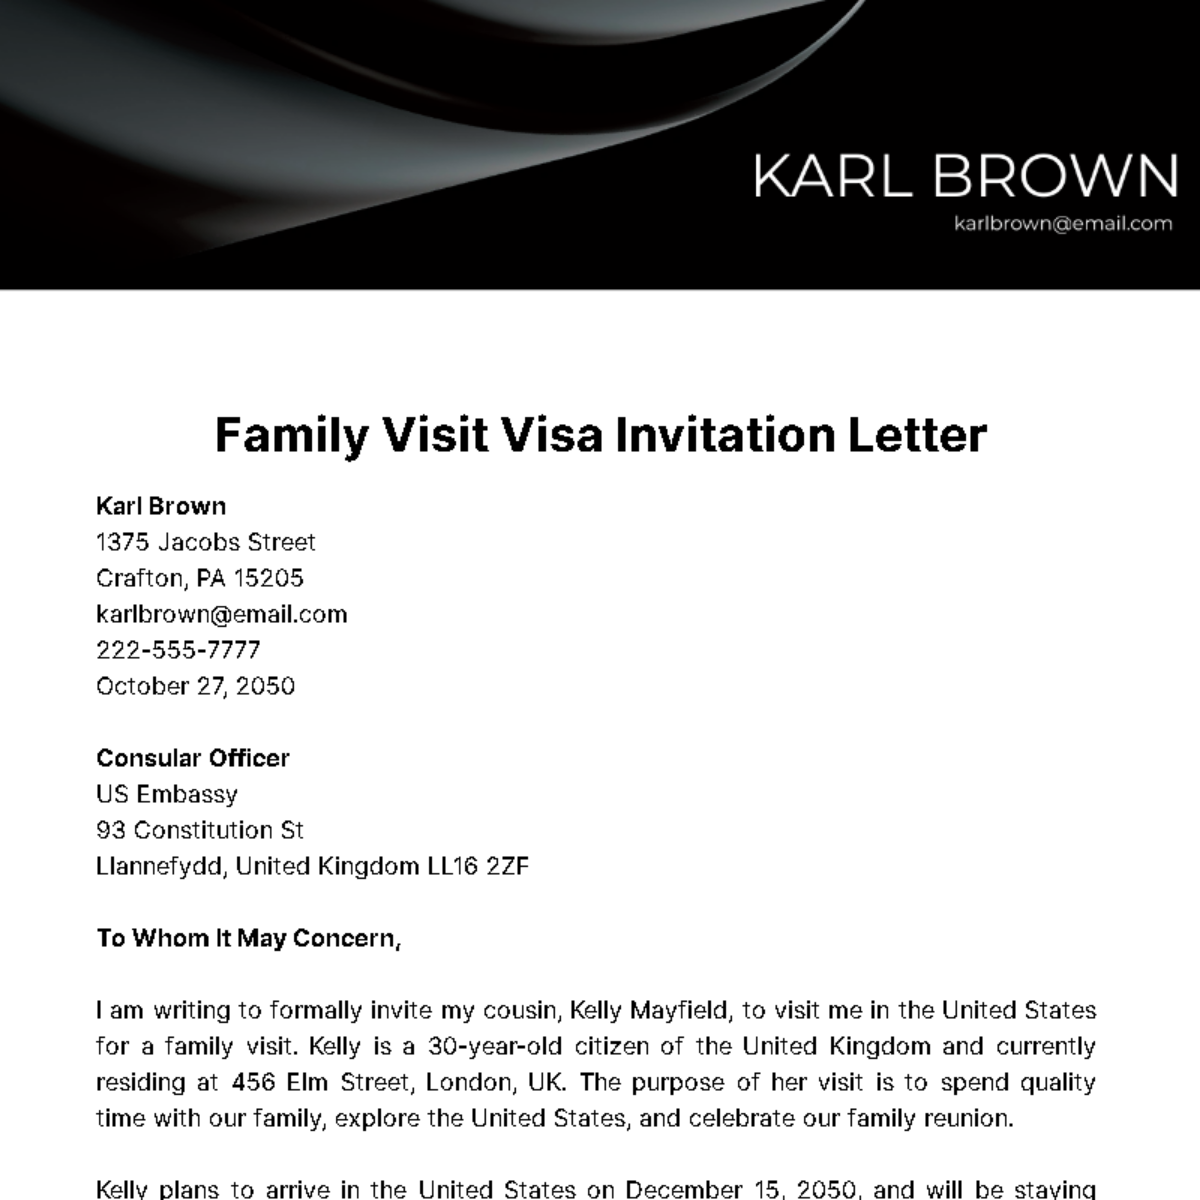 Family Visit Visa Invitation Letter Template